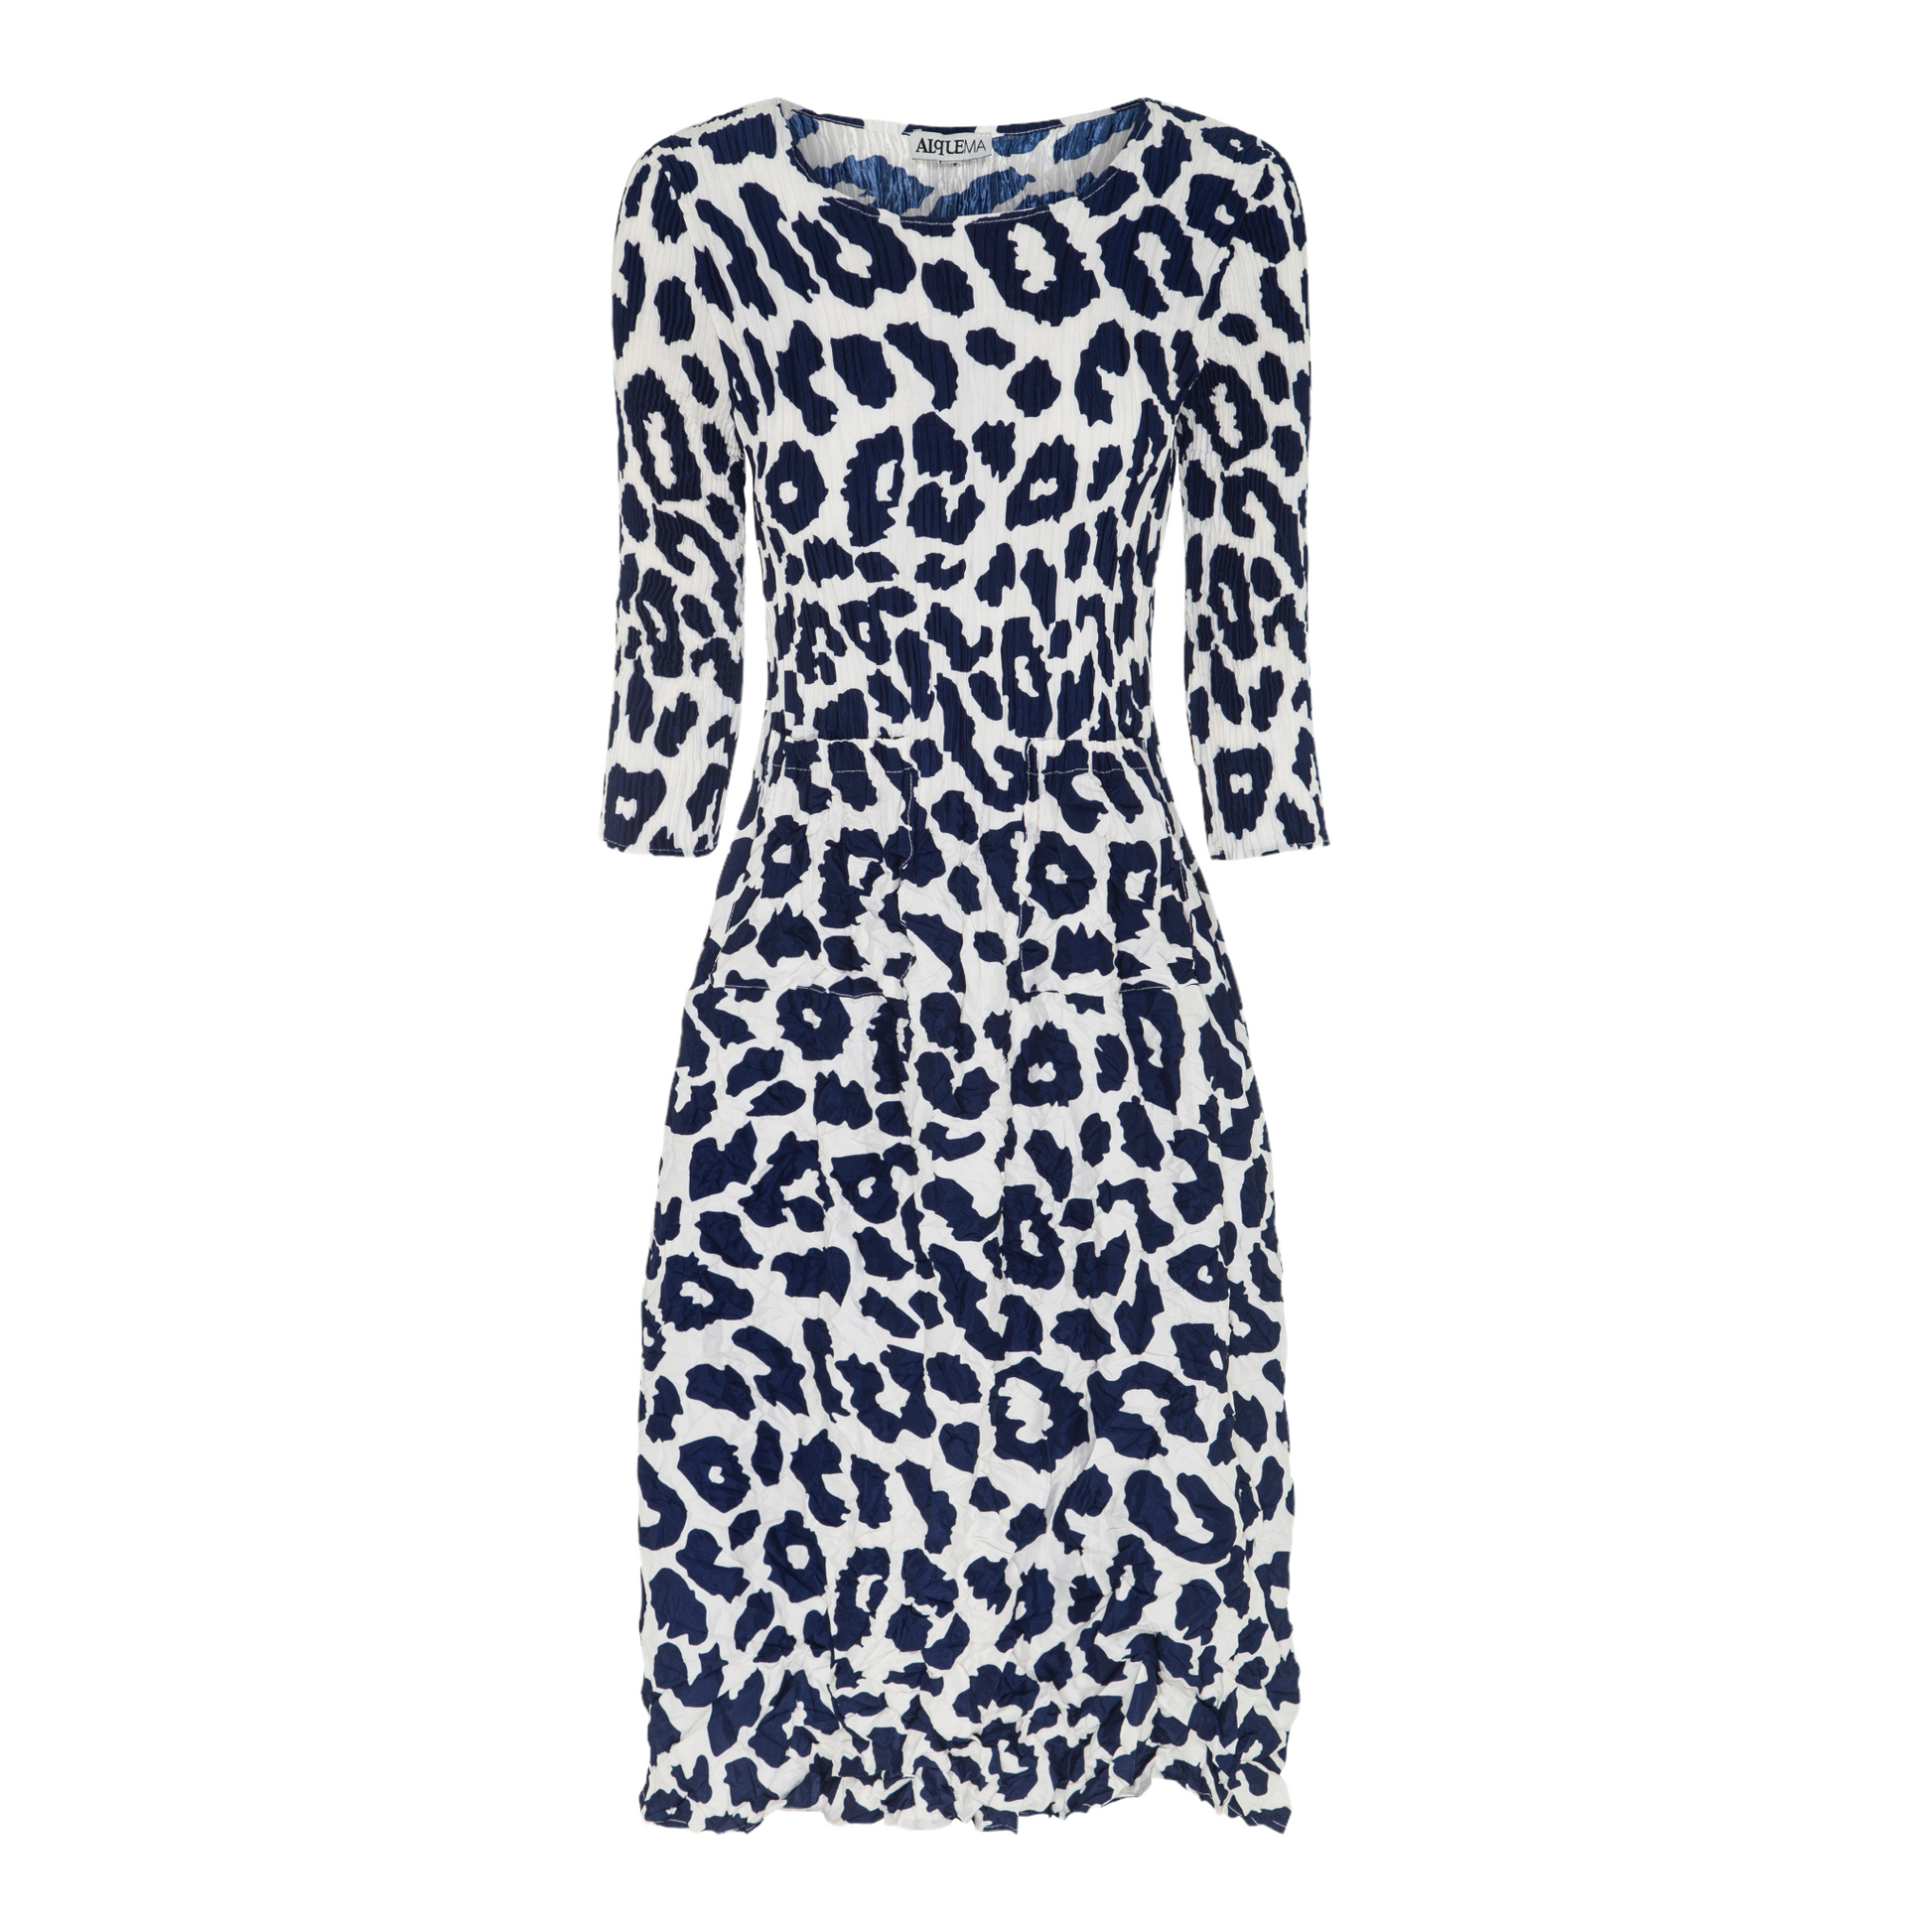 Conker Boutique Alquema Smash dress in Indigo Leopard